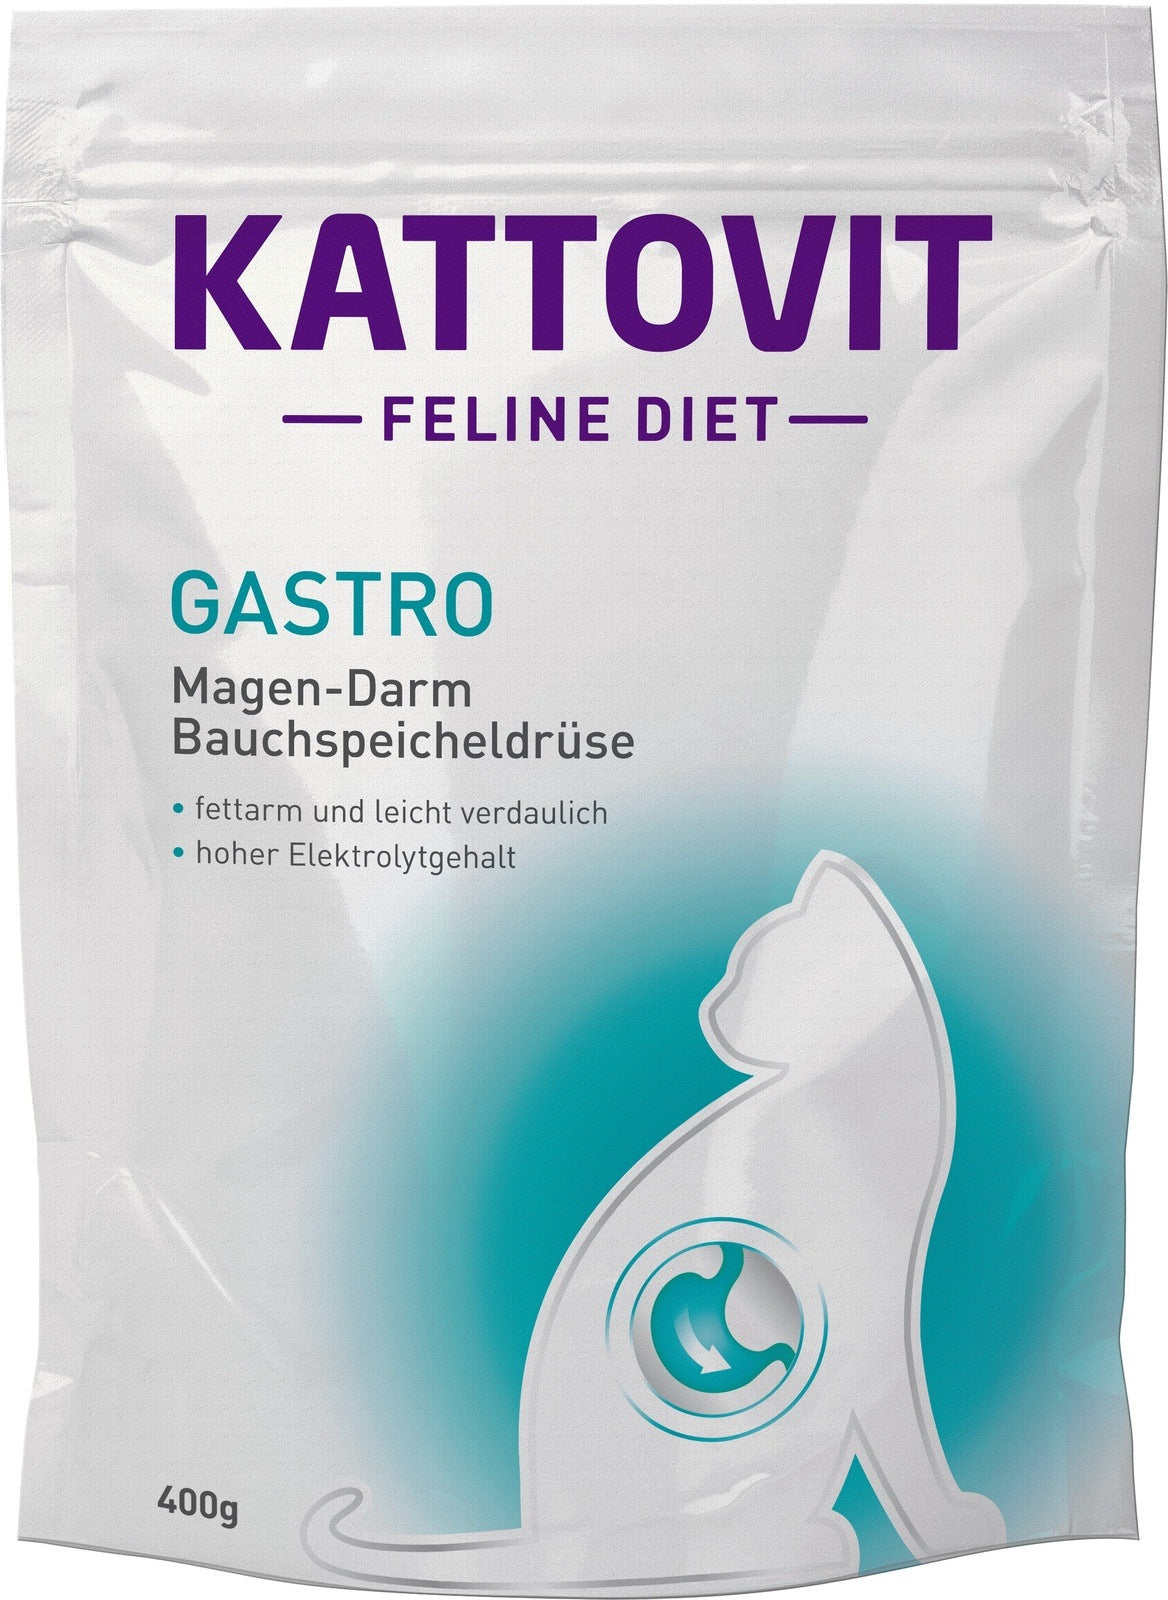 Kattovit Feline Diet Gastro Trockenfutter - zoo.de